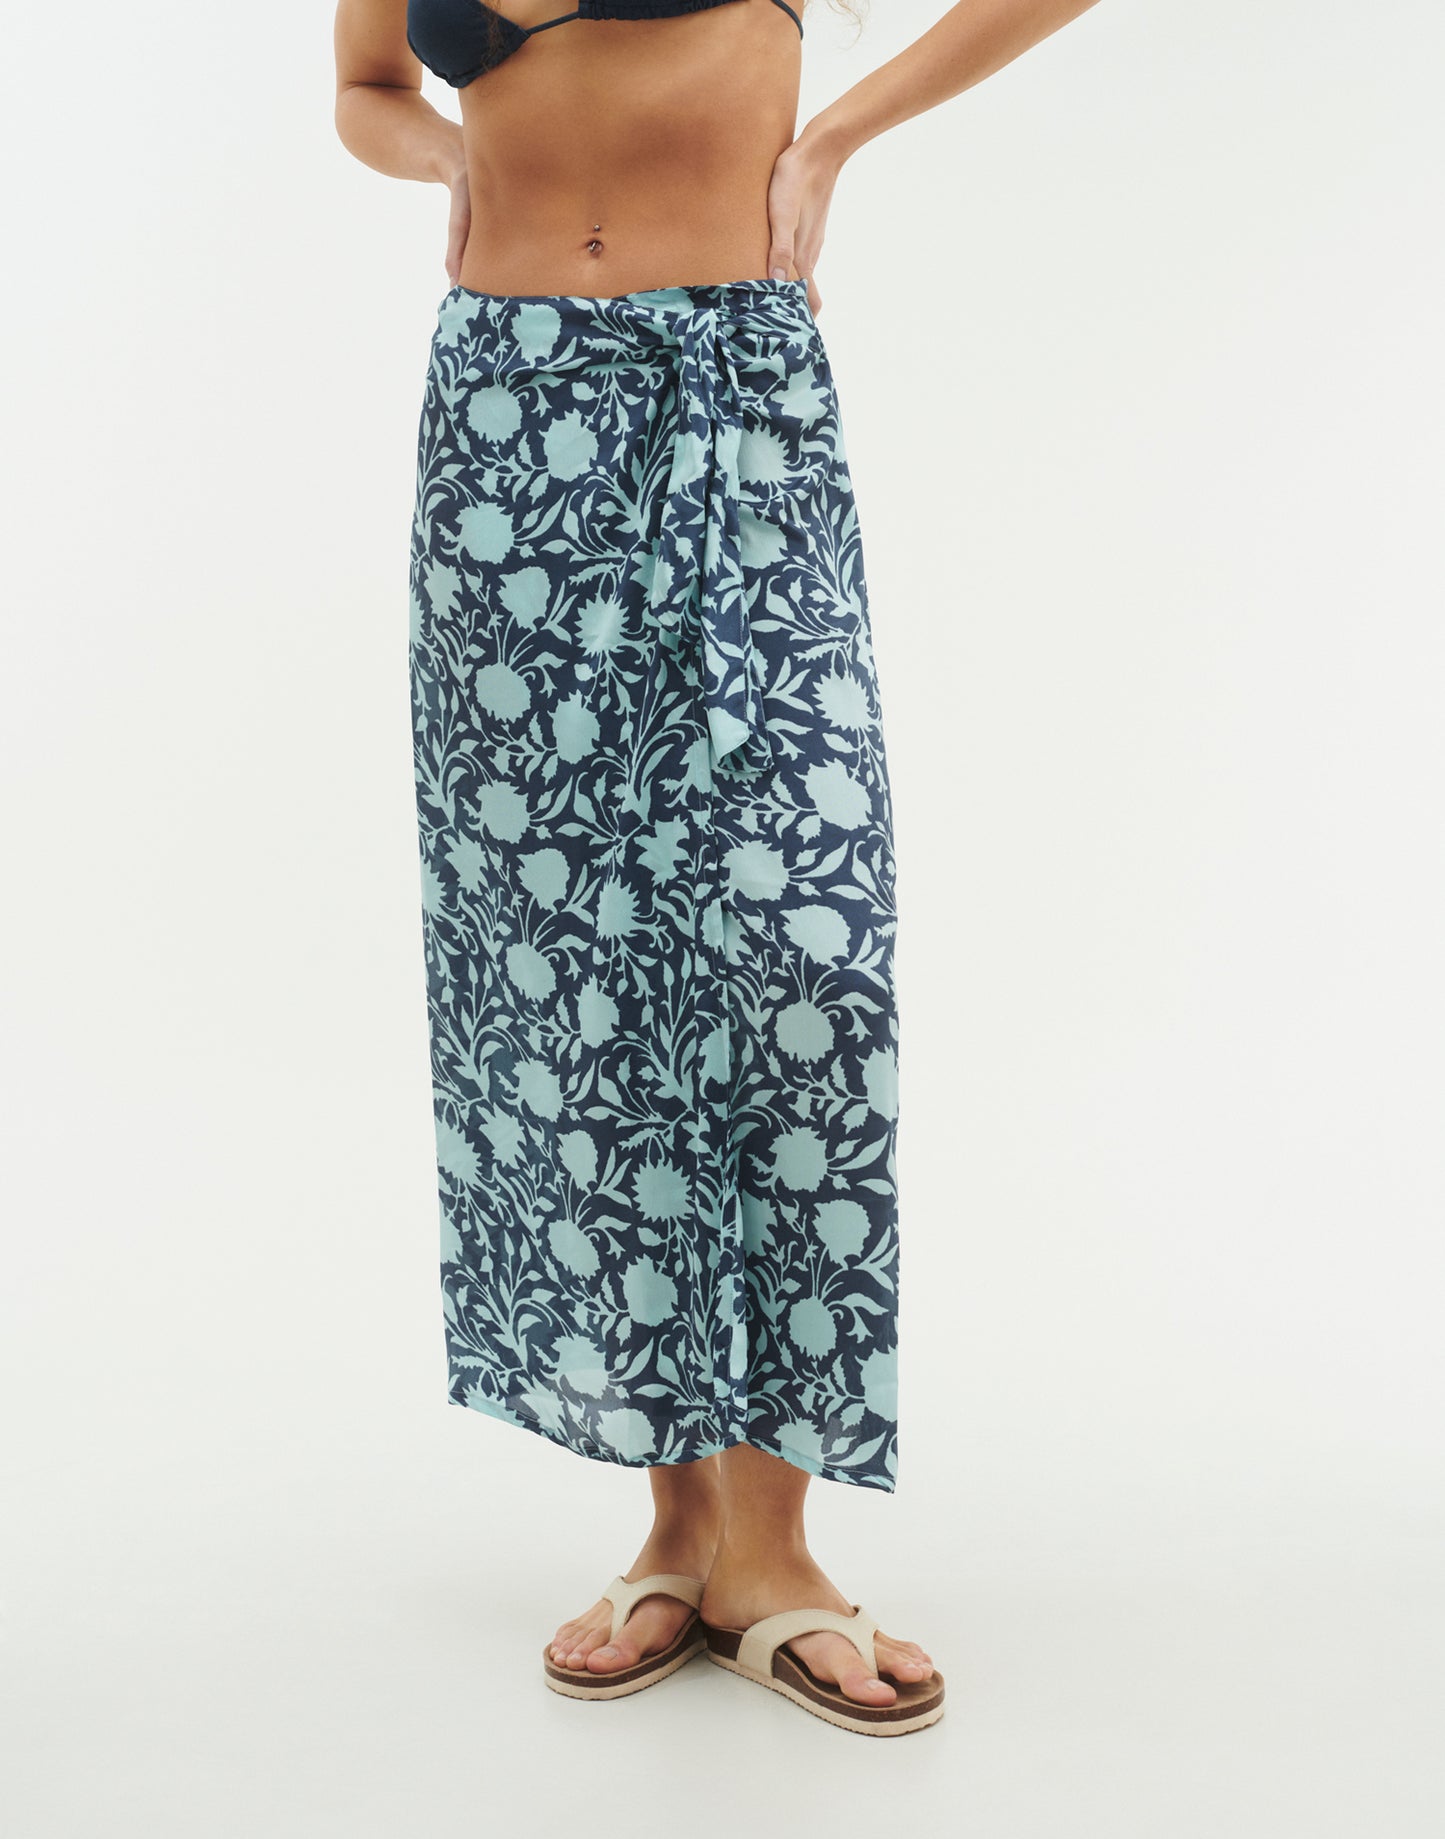 Aqua skirt